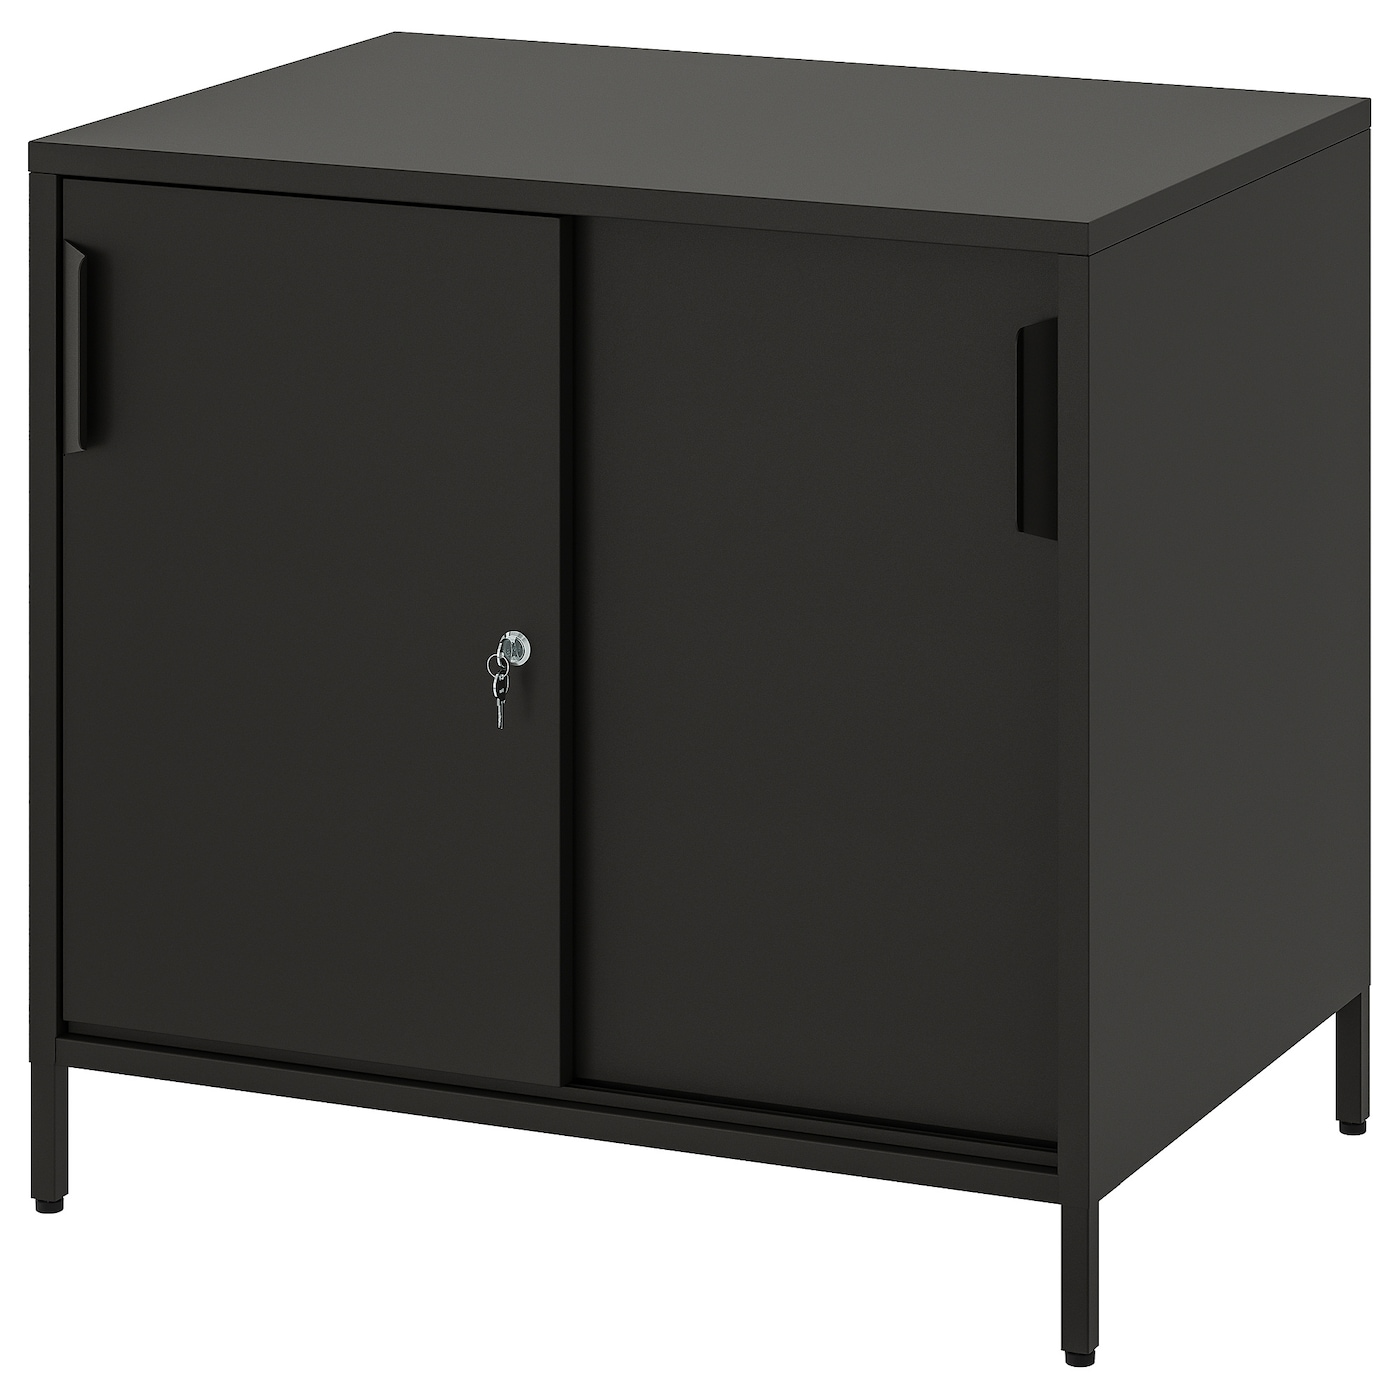 Шкаф - TROTTEN IKEA/ ТРОТТЕН ИКЕА,  80х75 см, черный